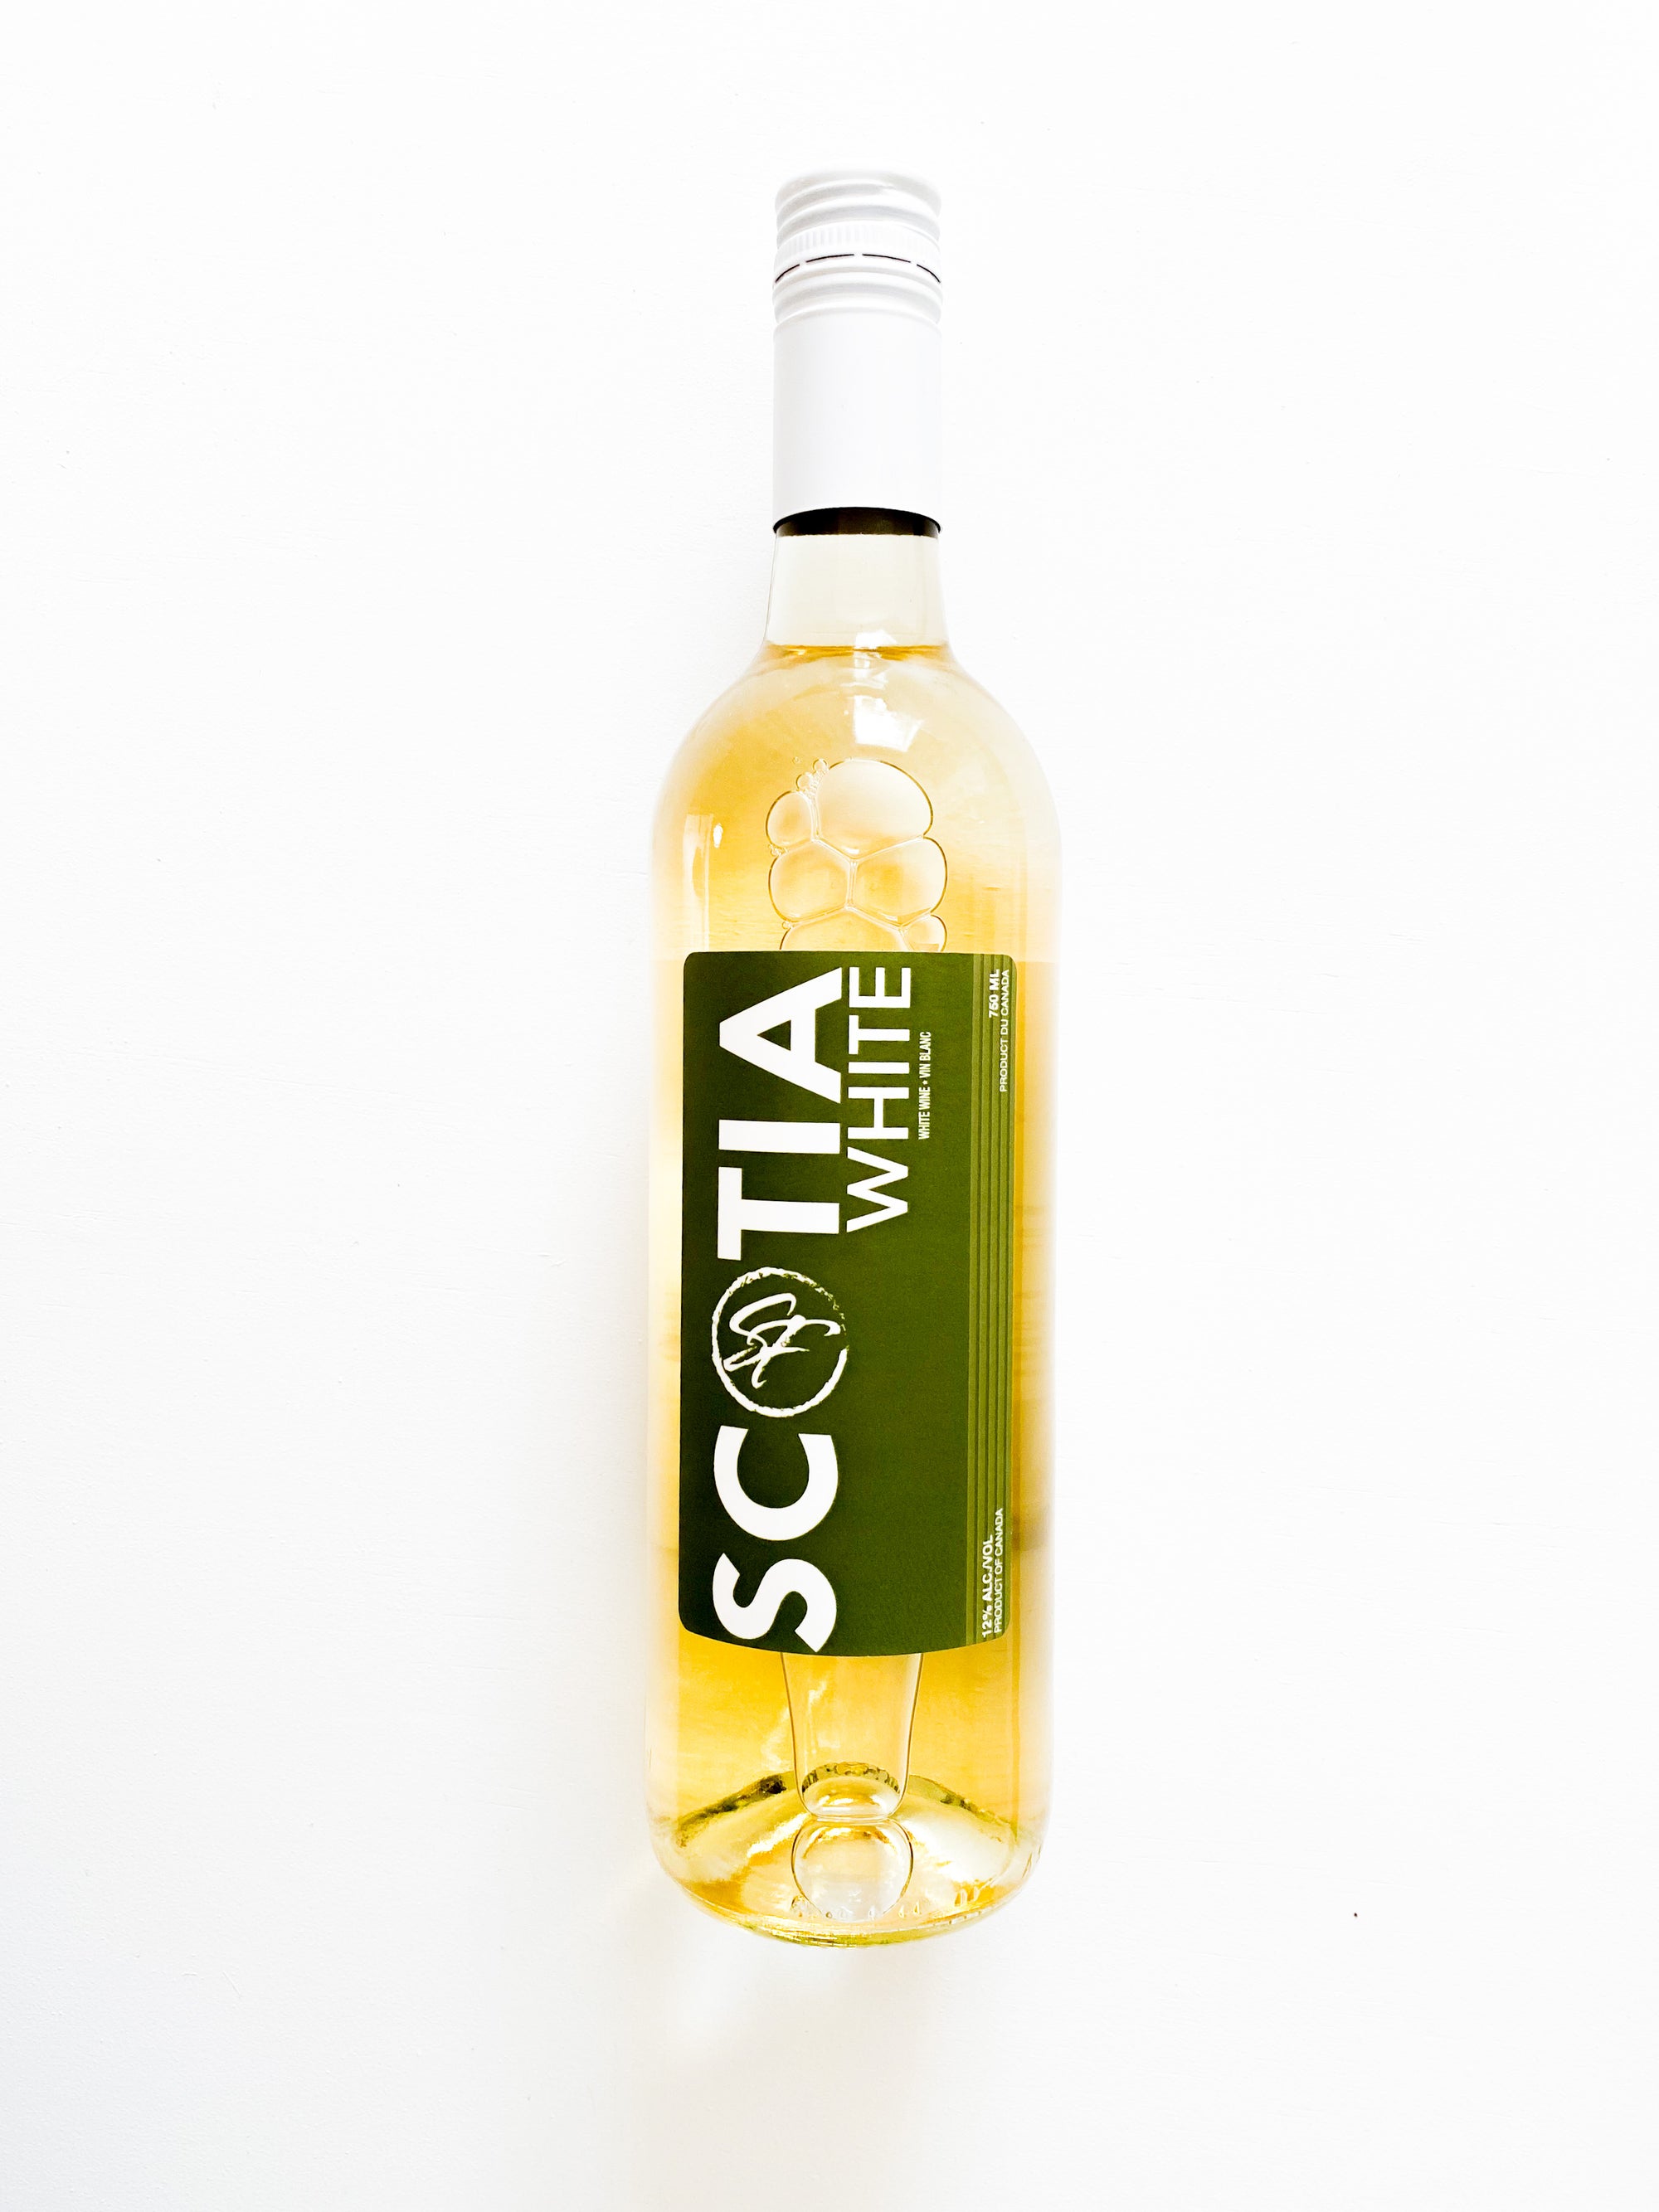 Bottle of Sainte-Famille Scotia White.